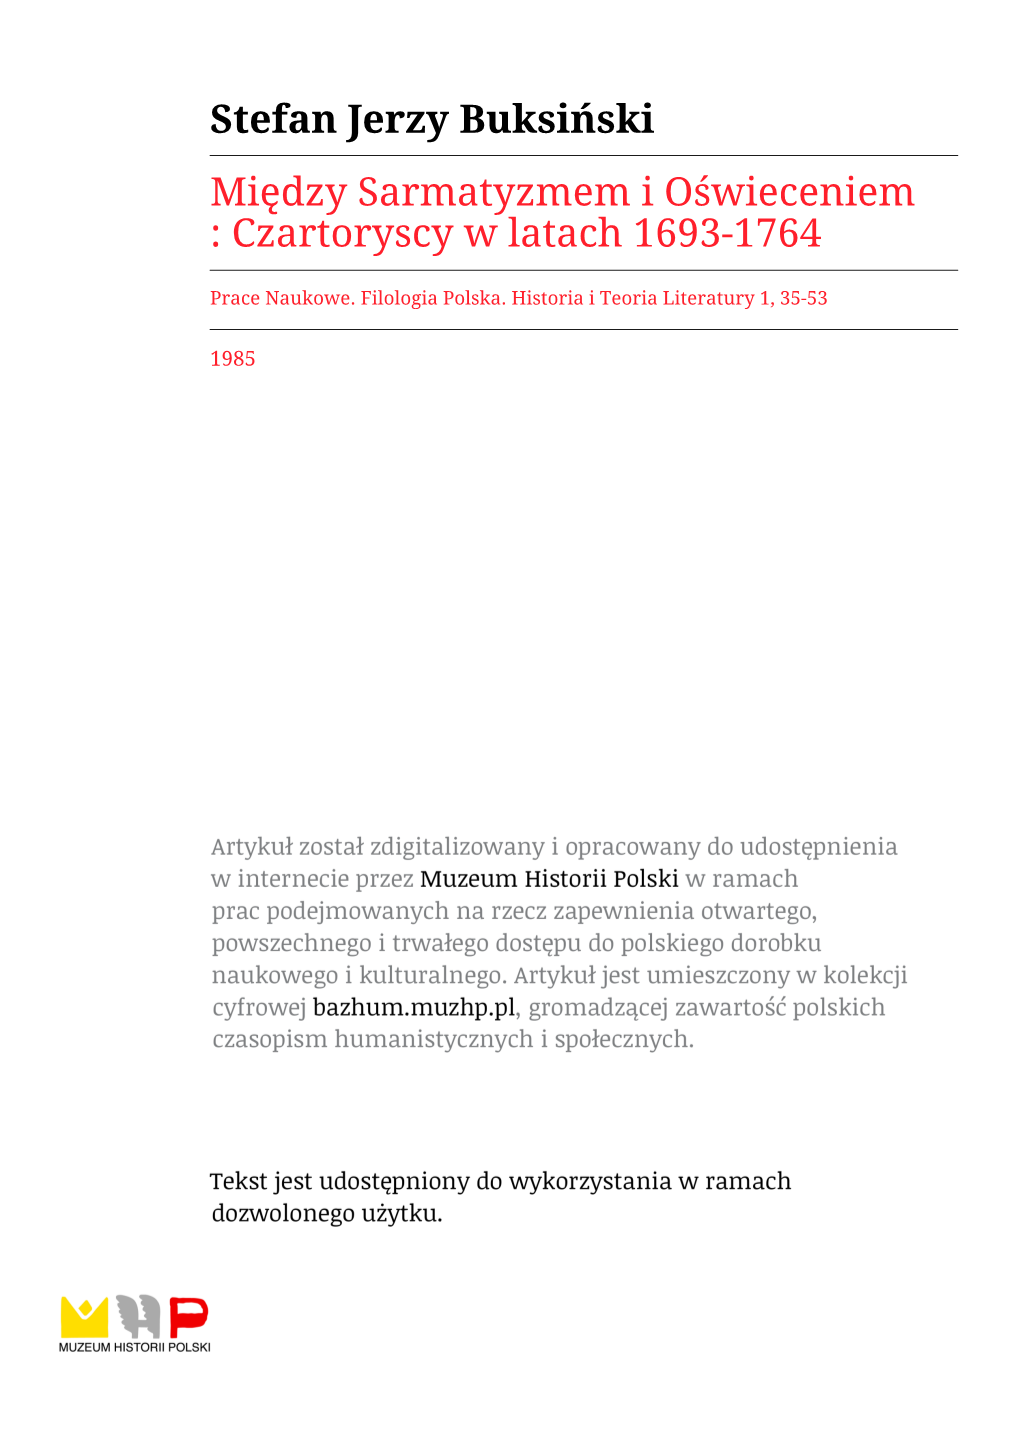 Czartoryscy W Latach 1693-1764